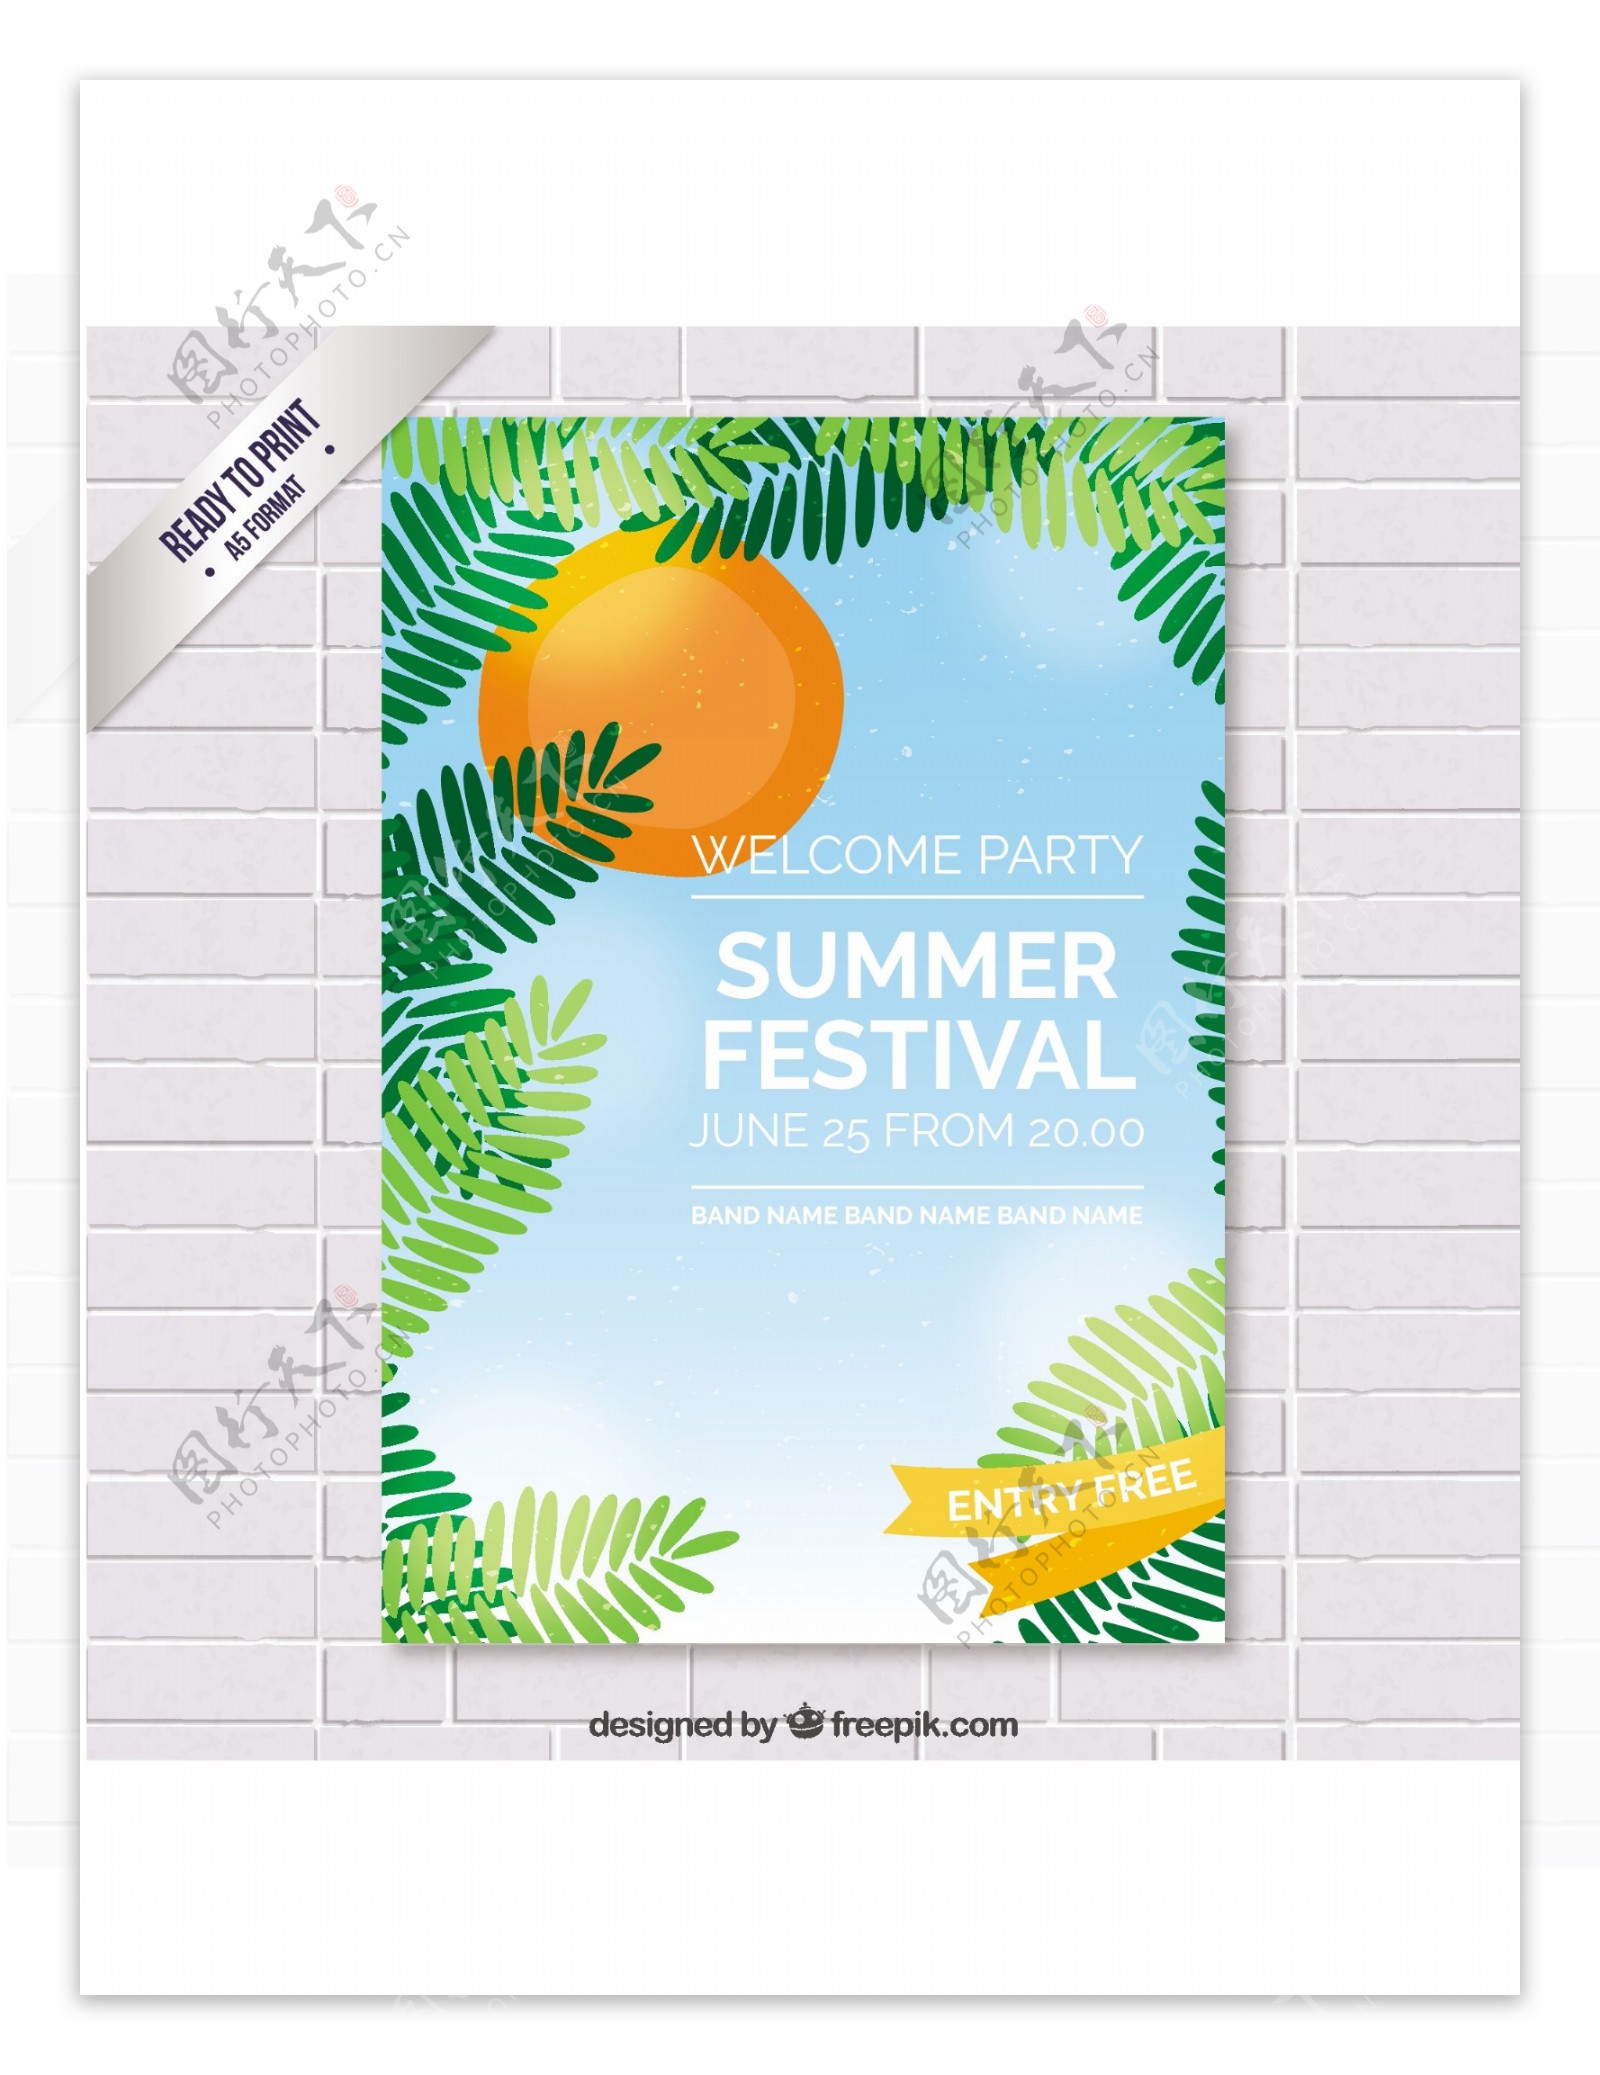 夏季音乐节海报